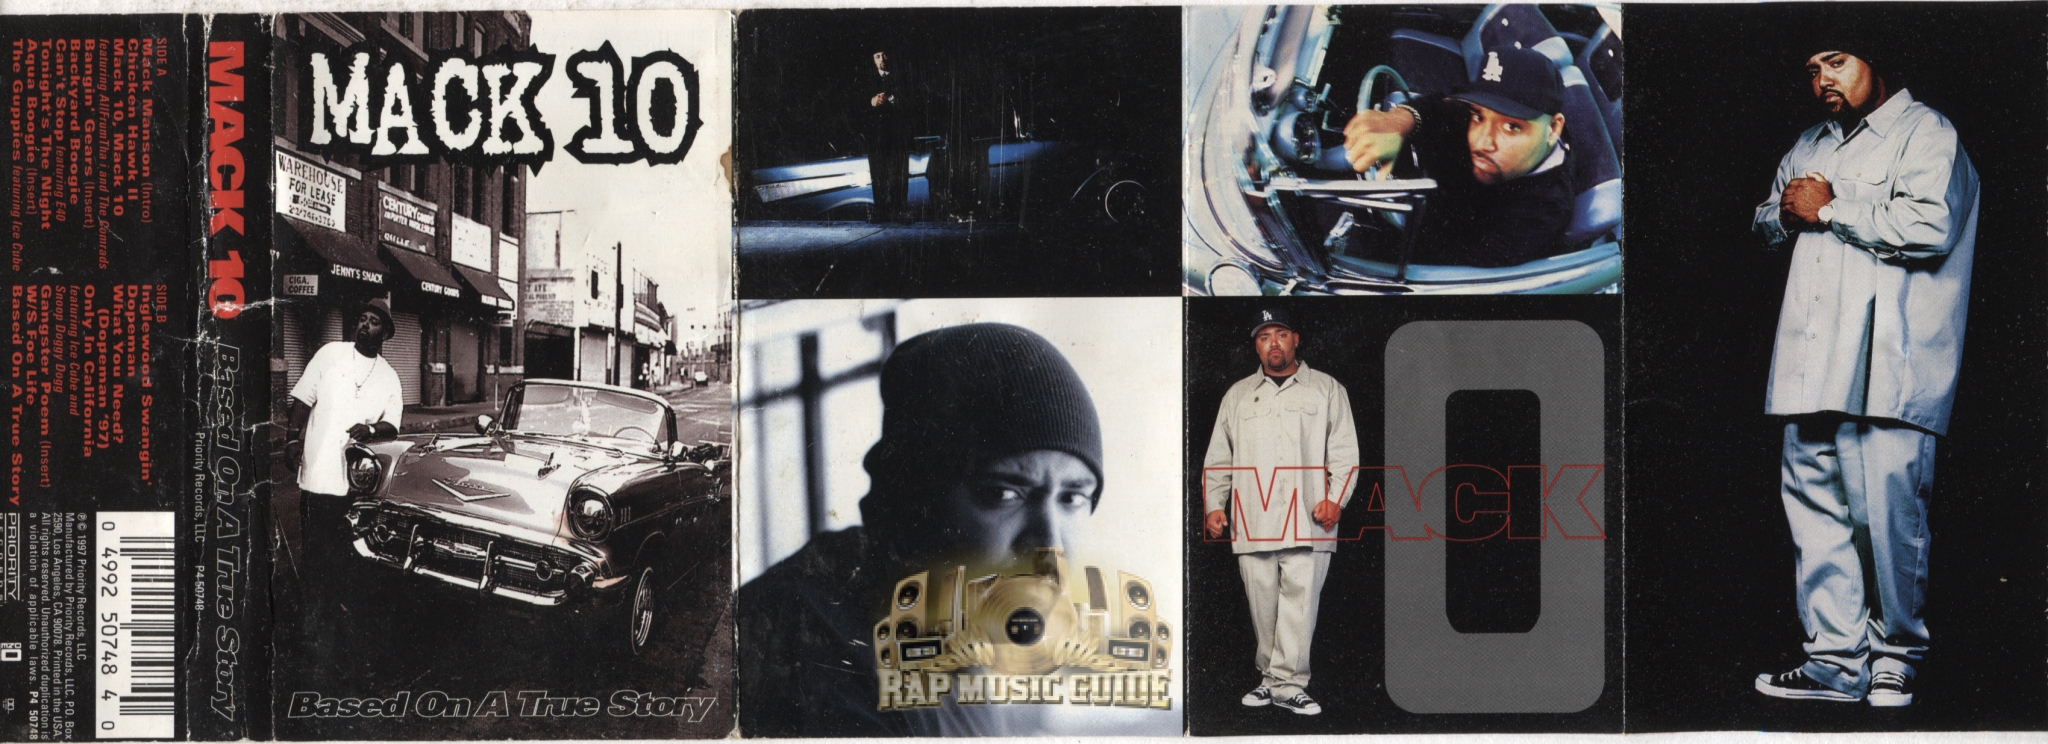 Mack 10 - Based On A True Story: Cassette Tape | Rap Music Guide